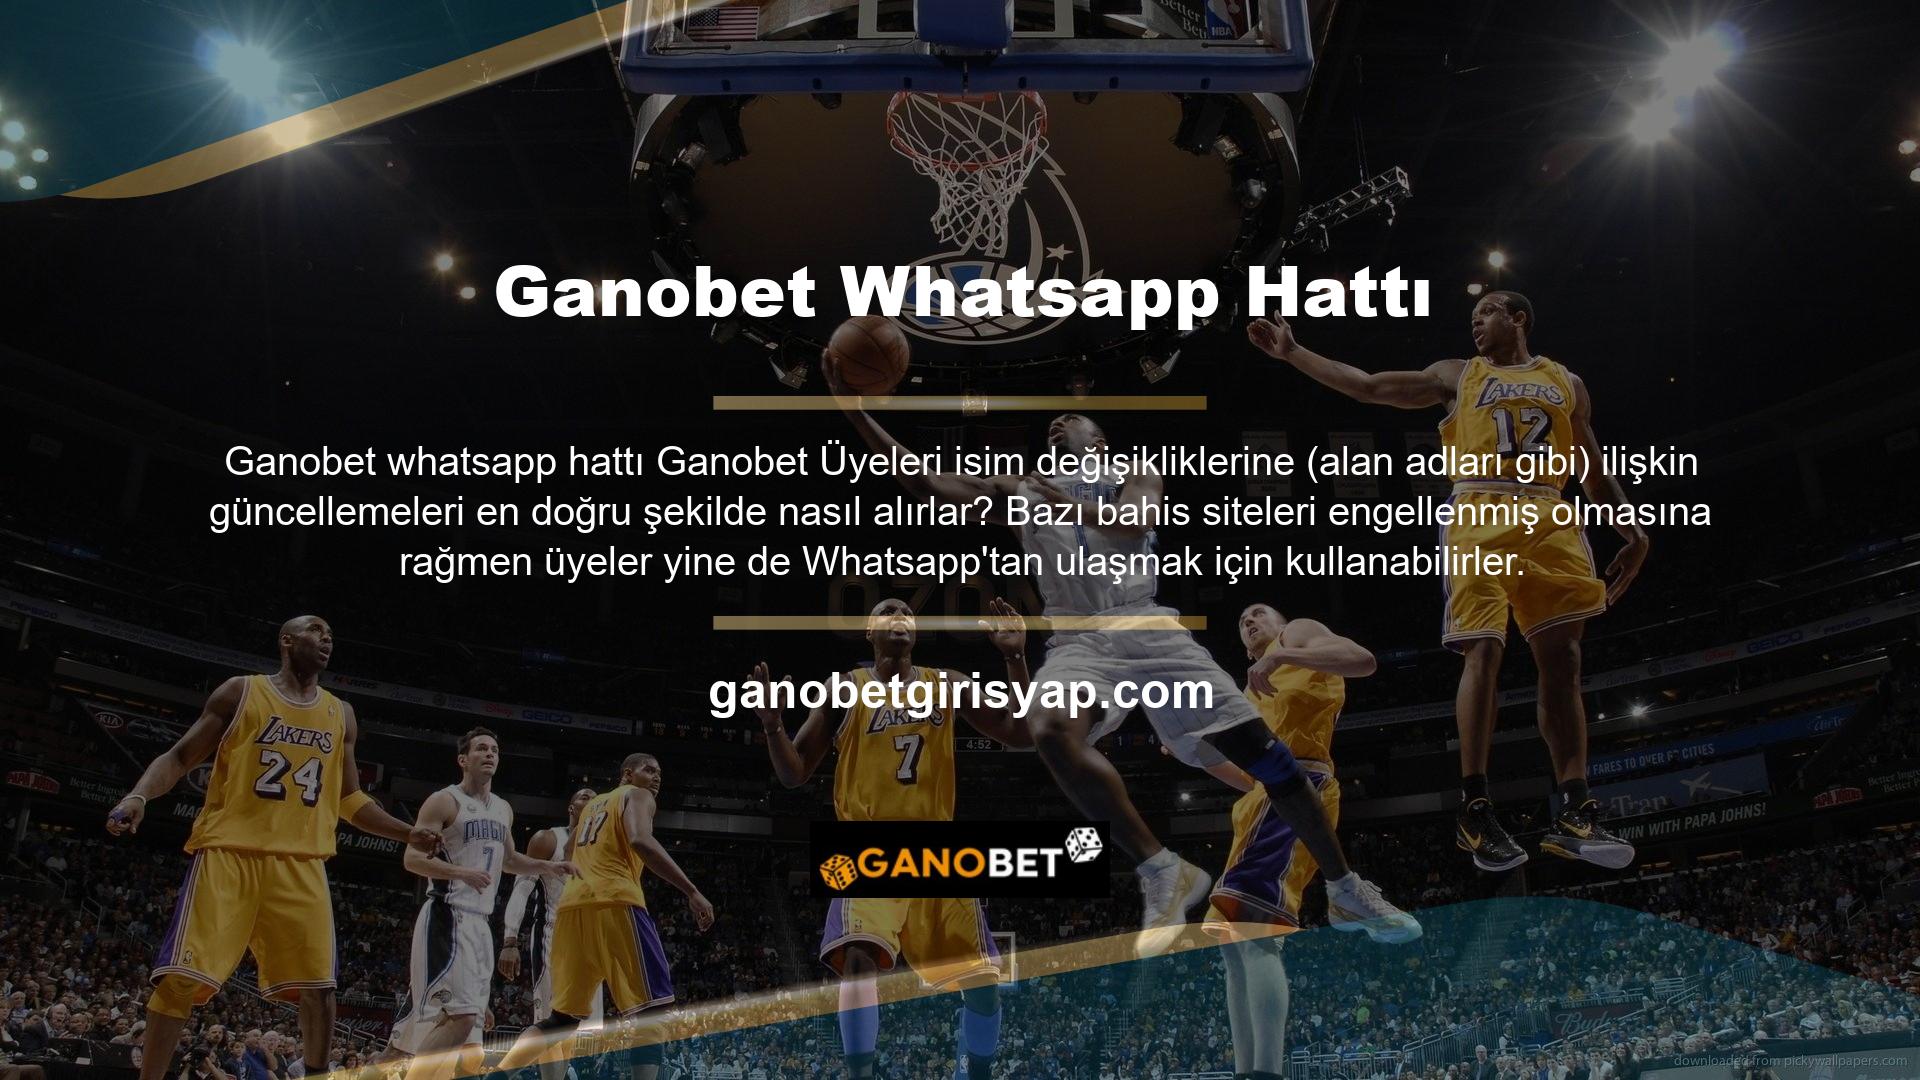 Ganobet Whatsapp mesajlaşma platformu, canlı maç bahislerine ve bahis sitesinde yayınlanan maçlara erişim sağlar